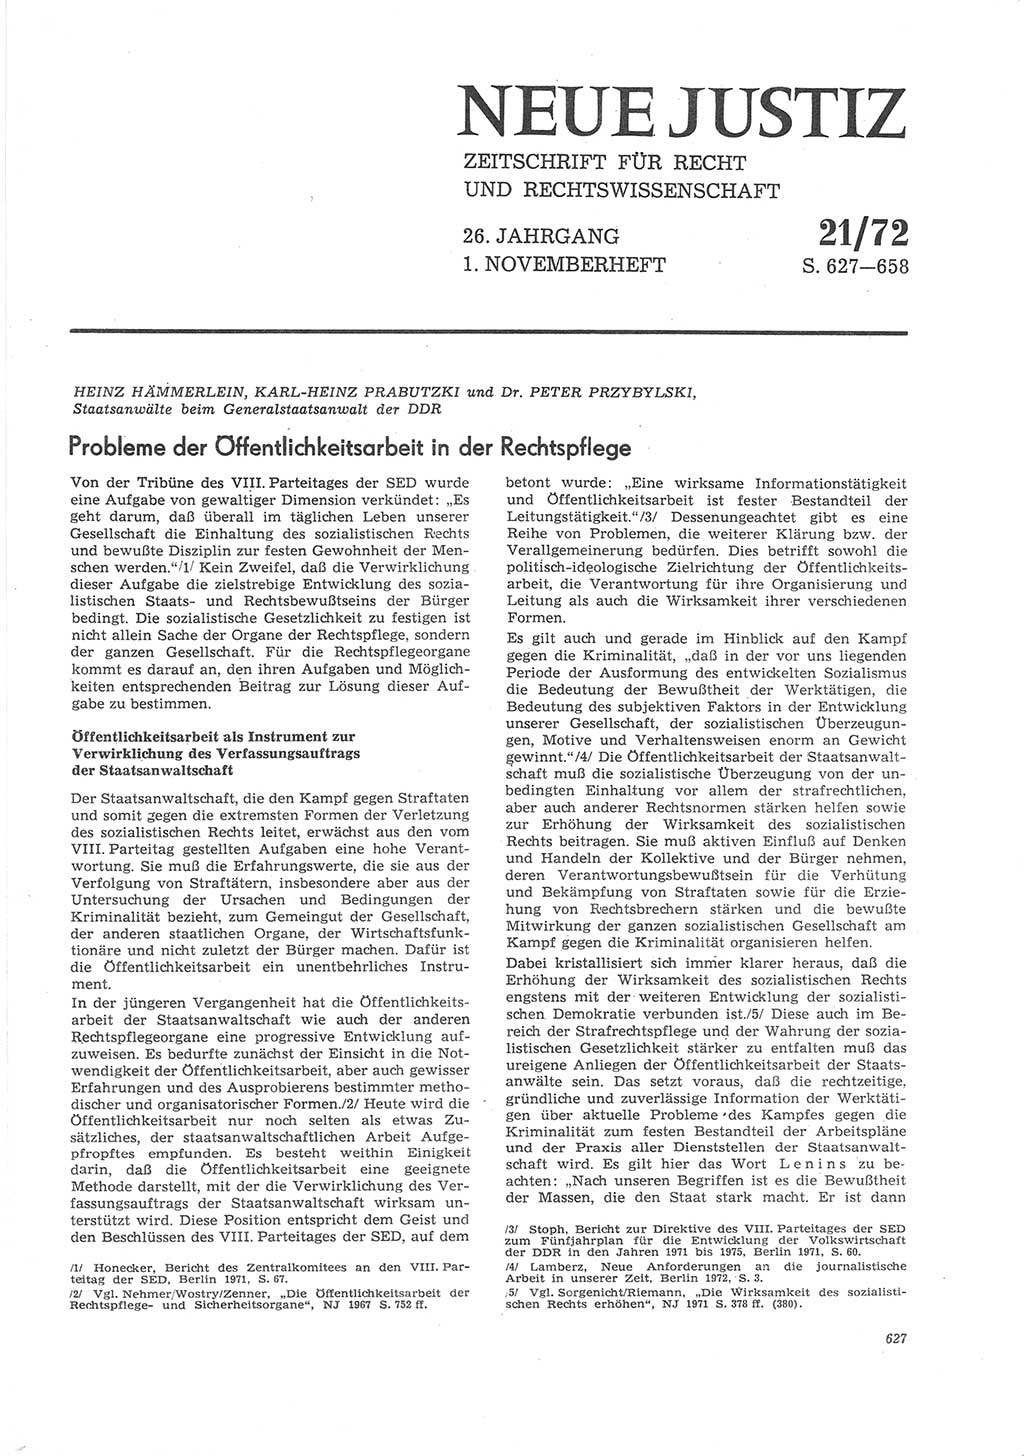 Neue Justiz (NJ), Zeitschrift für Recht und Rechtswissenschaft [Deutsche Demokratische Republik (DDR)], 26. Jahrgang 1972, Seite 627 (NJ DDR 1972, S. 627)